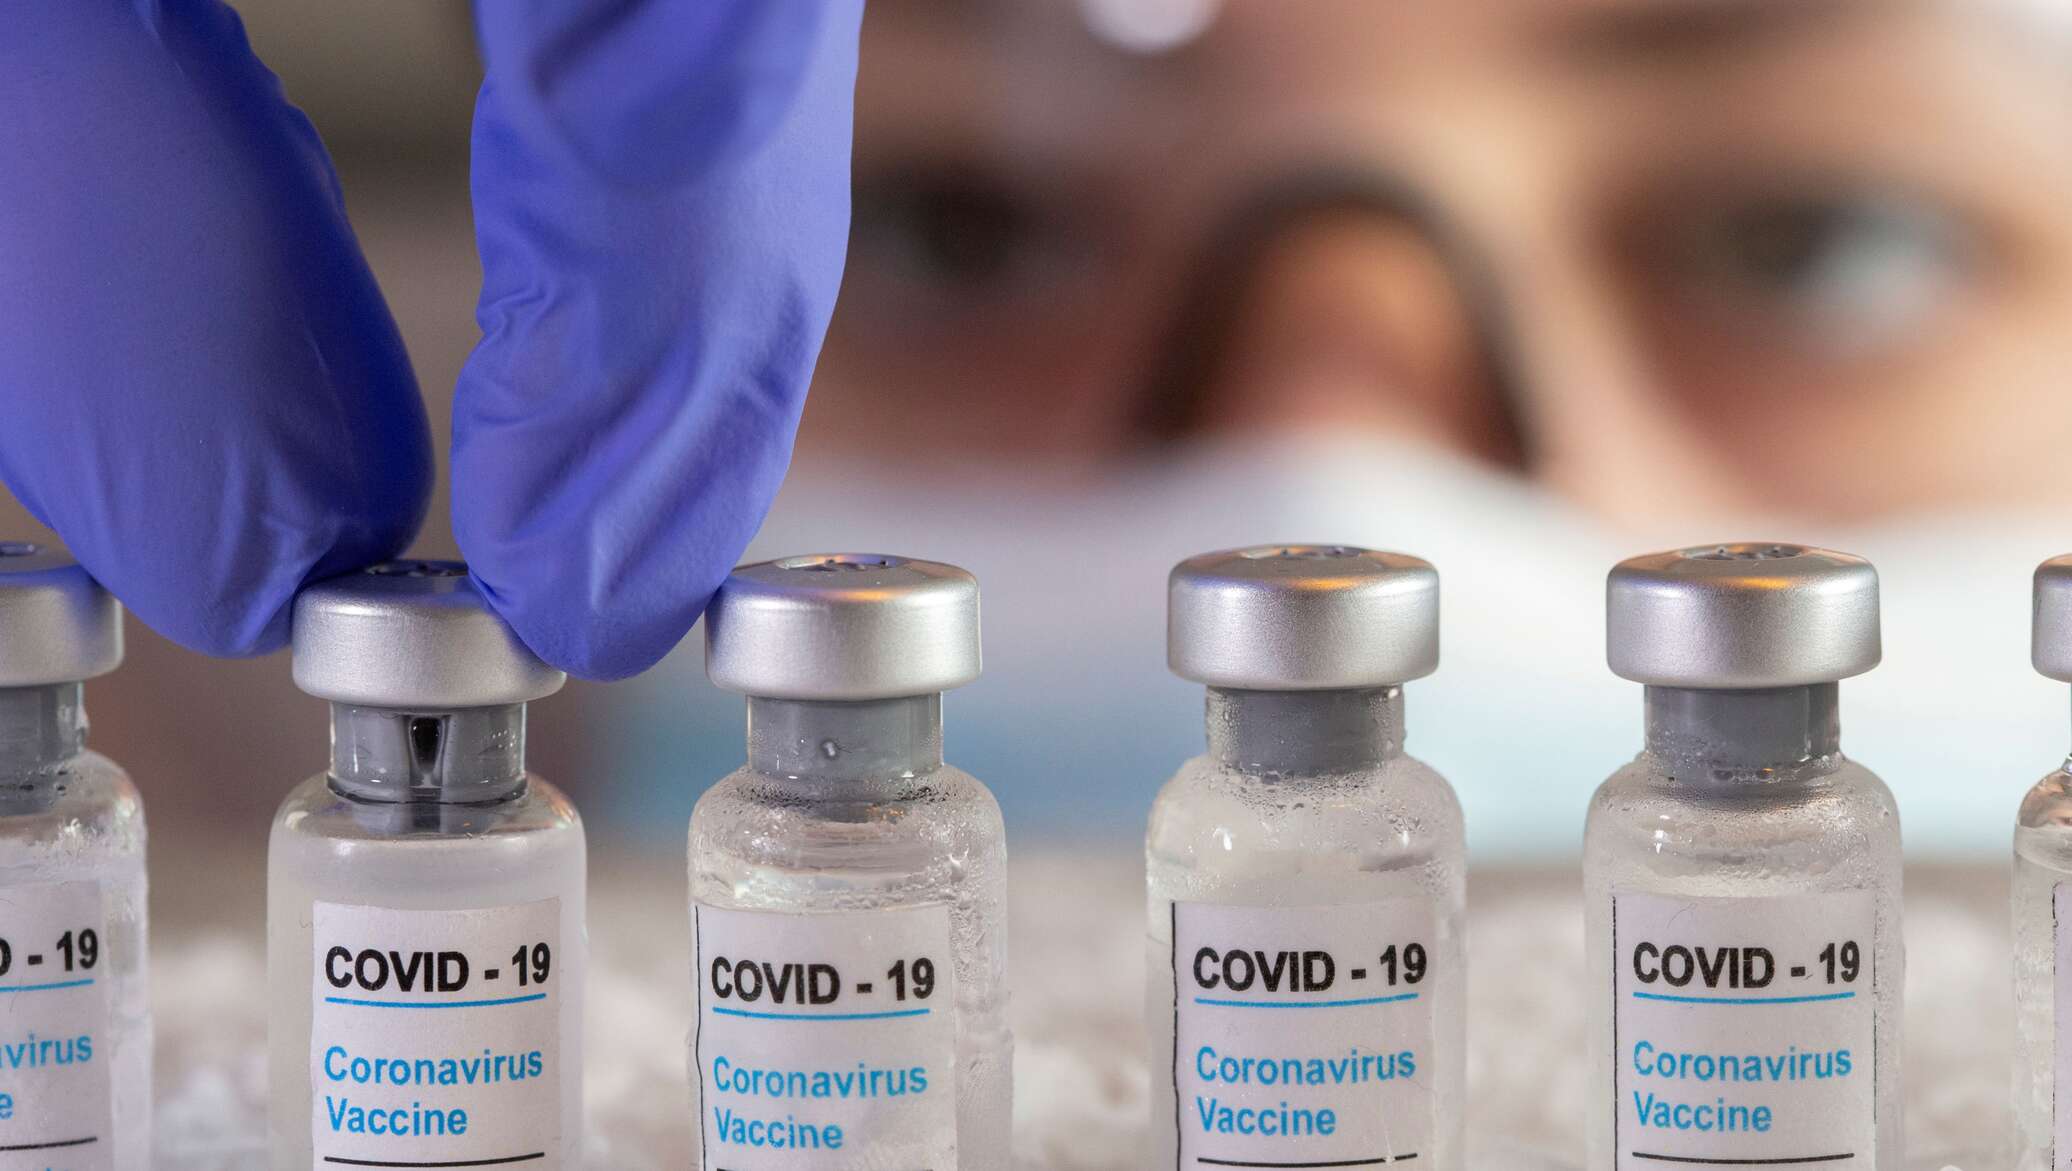 Вакцина коронавирус 2020. Вакцина от Covid-19. Covid vaccine Covid - 19 vaccine. Вакцина картинки. Вакцинация от коронавируса.